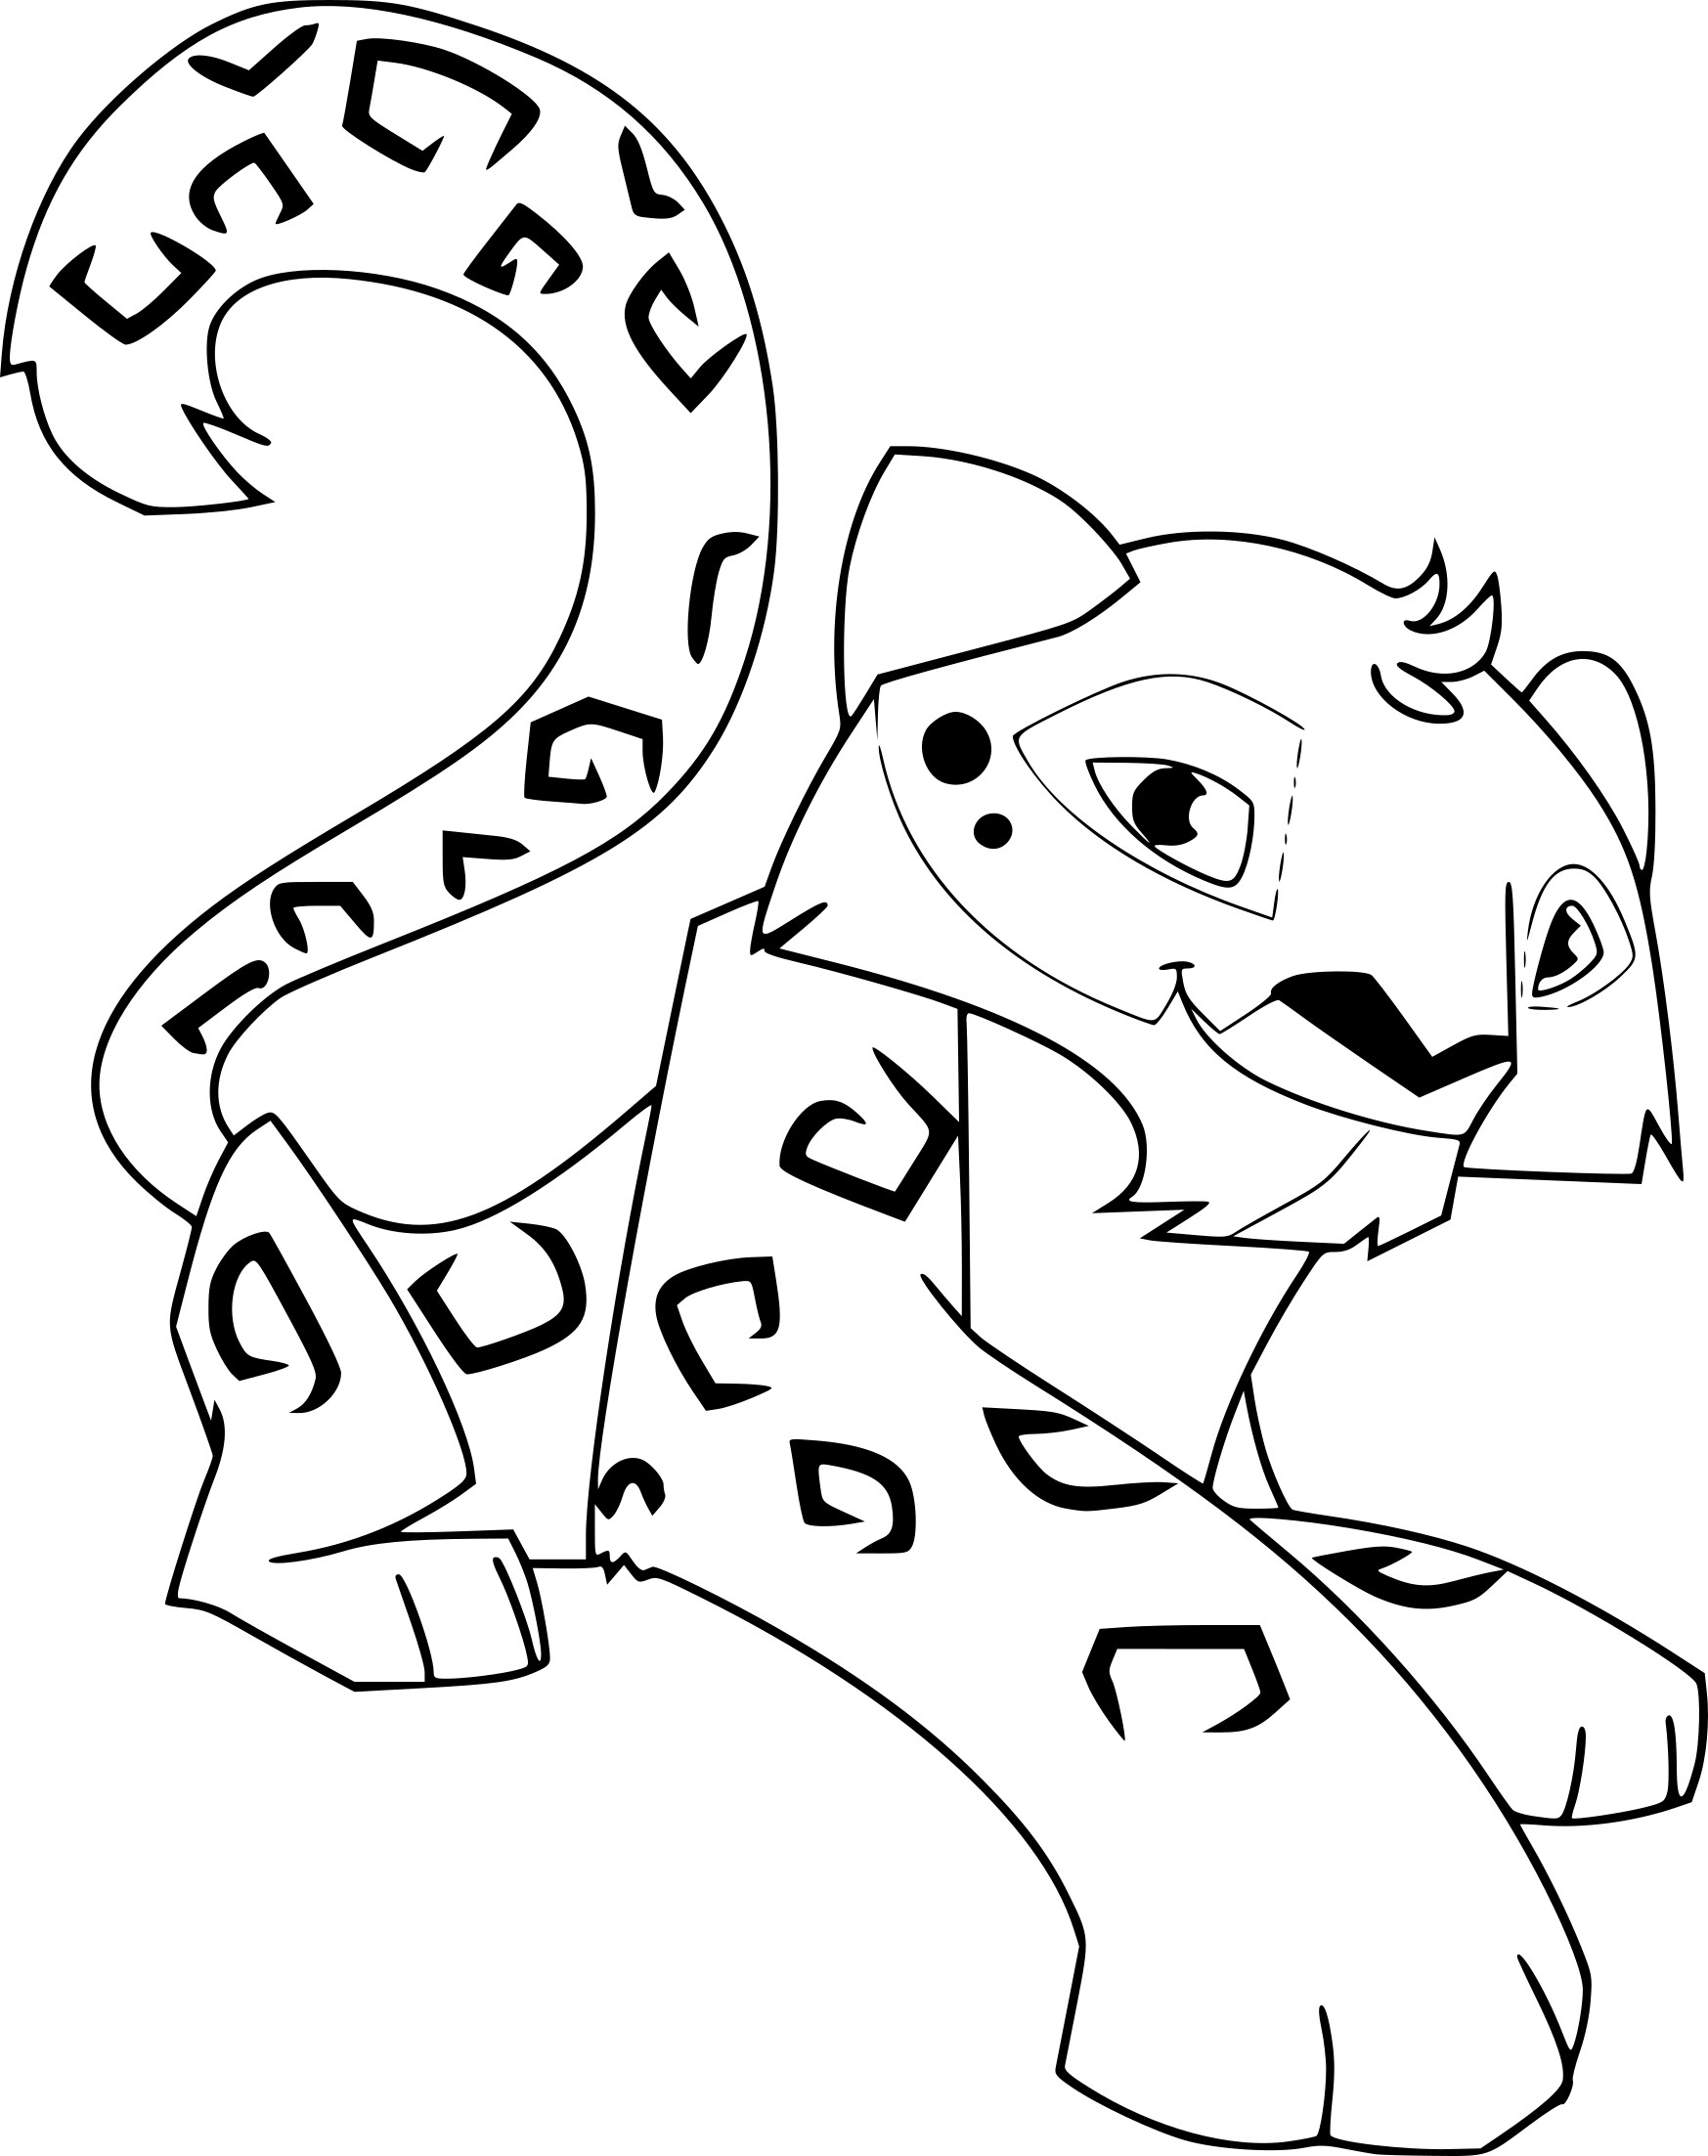 Disegno di Leopardo delle nevi da colorare